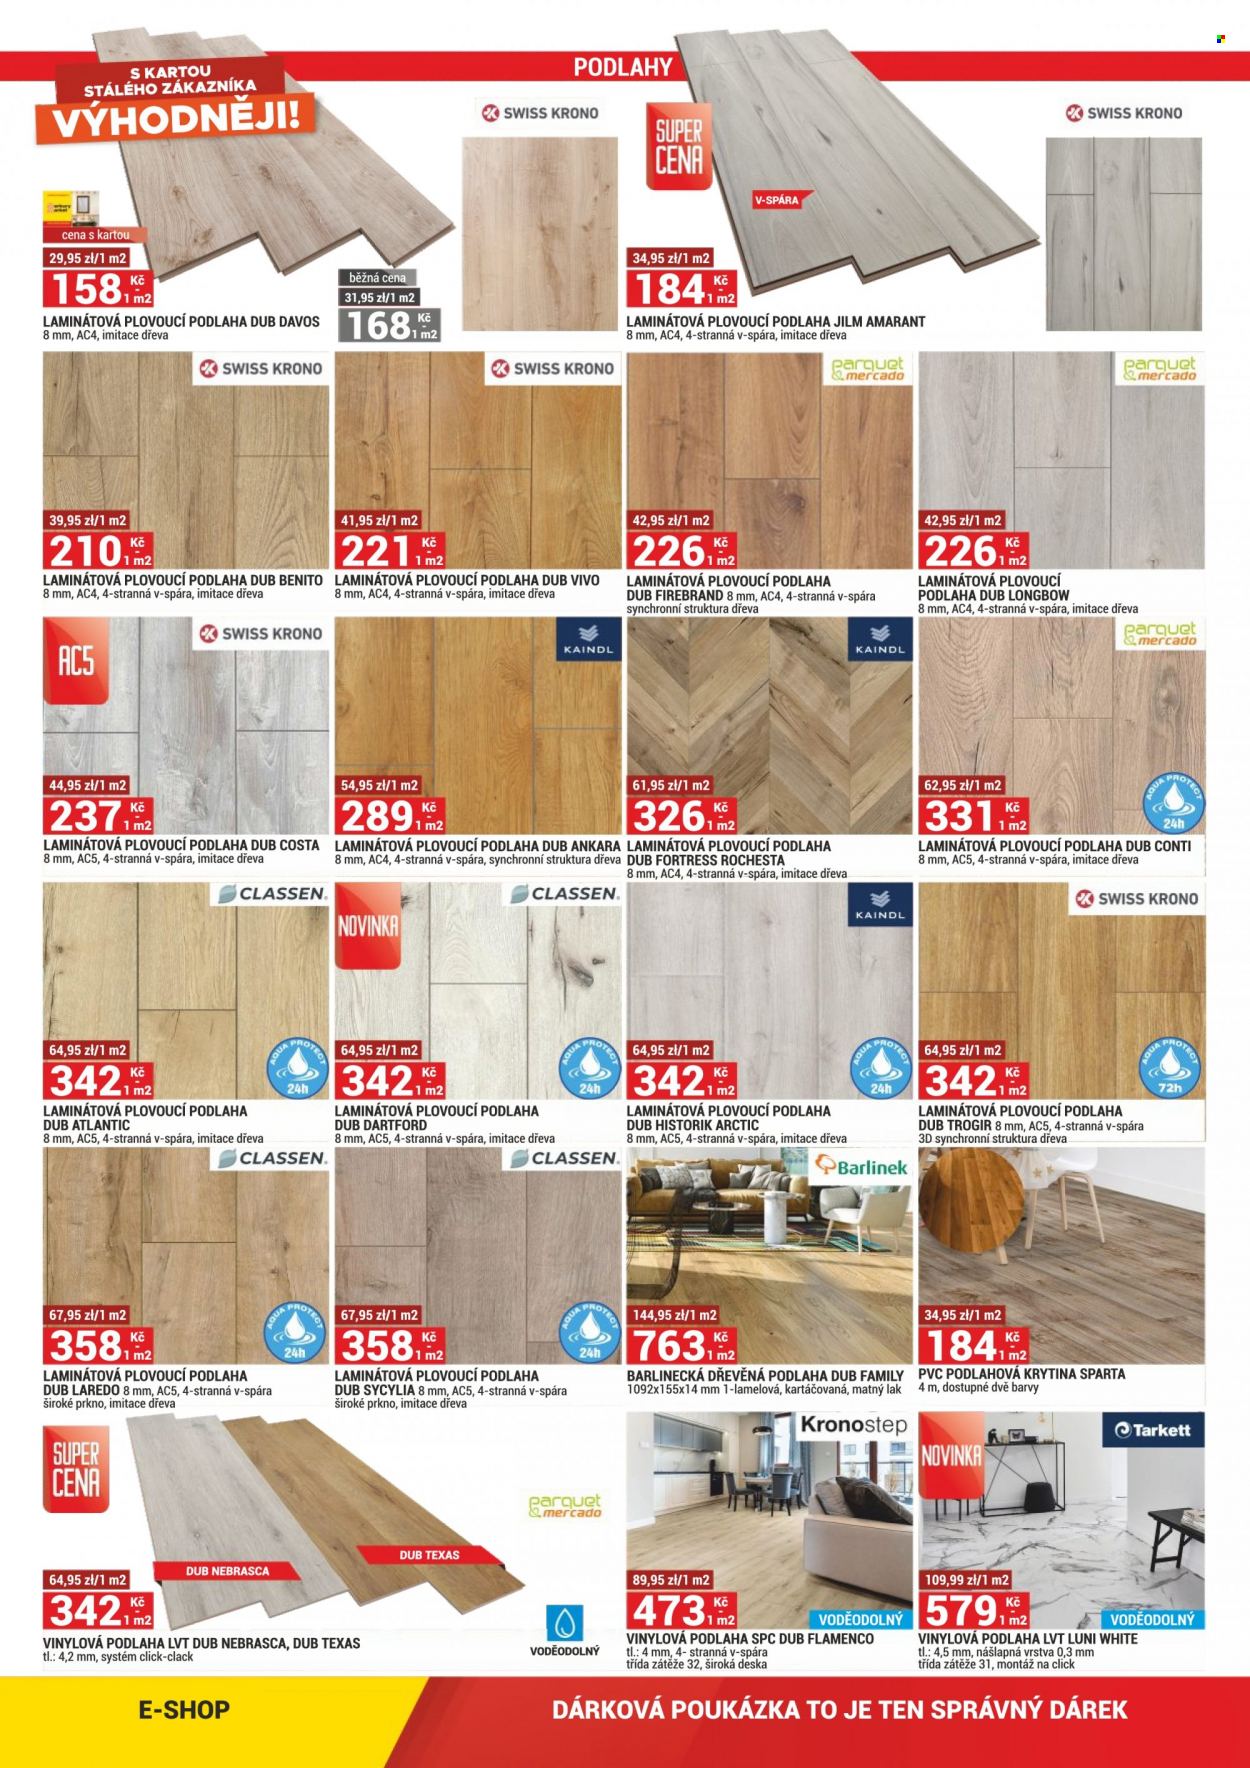 thumbnail - Leták Merkury Market - 1.8.2022 - 31.8.2022 - Produkty v akci - deska, laminátová plovoucí podlaha, plovoucí podlaha, podlahové krytiny, podlaha, dřevěná podlaha, vinylová podlaha, laminátová podlaha. Strana 4.